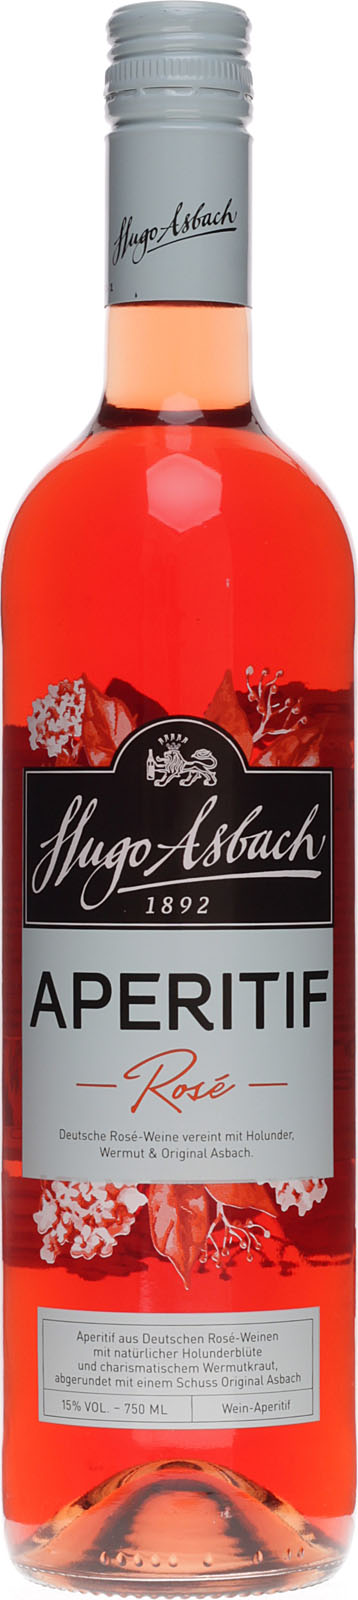 Asbach Aperitif fruchtige 0,75 Rose 15 % Vol. aus Liter